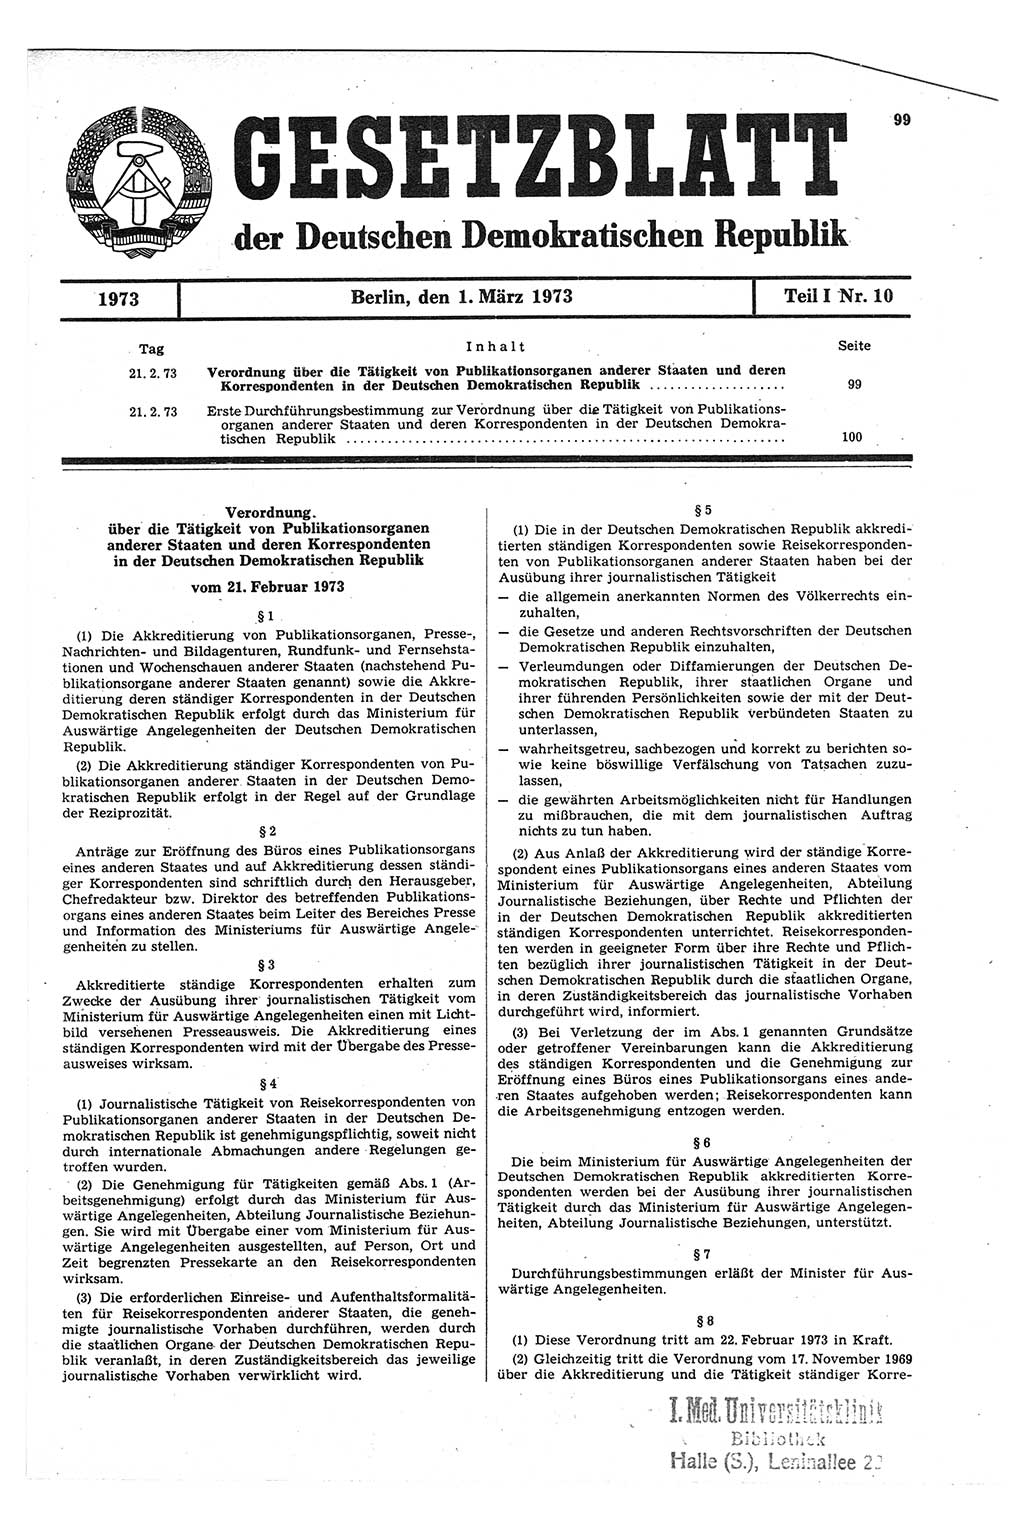 Gesetzblatt (GBl.) der Deutschen Demokratischen Republik (DDR) Teil Ⅰ 1973, Seite 99 (GBl. DDR Ⅰ 1973, S. 99)